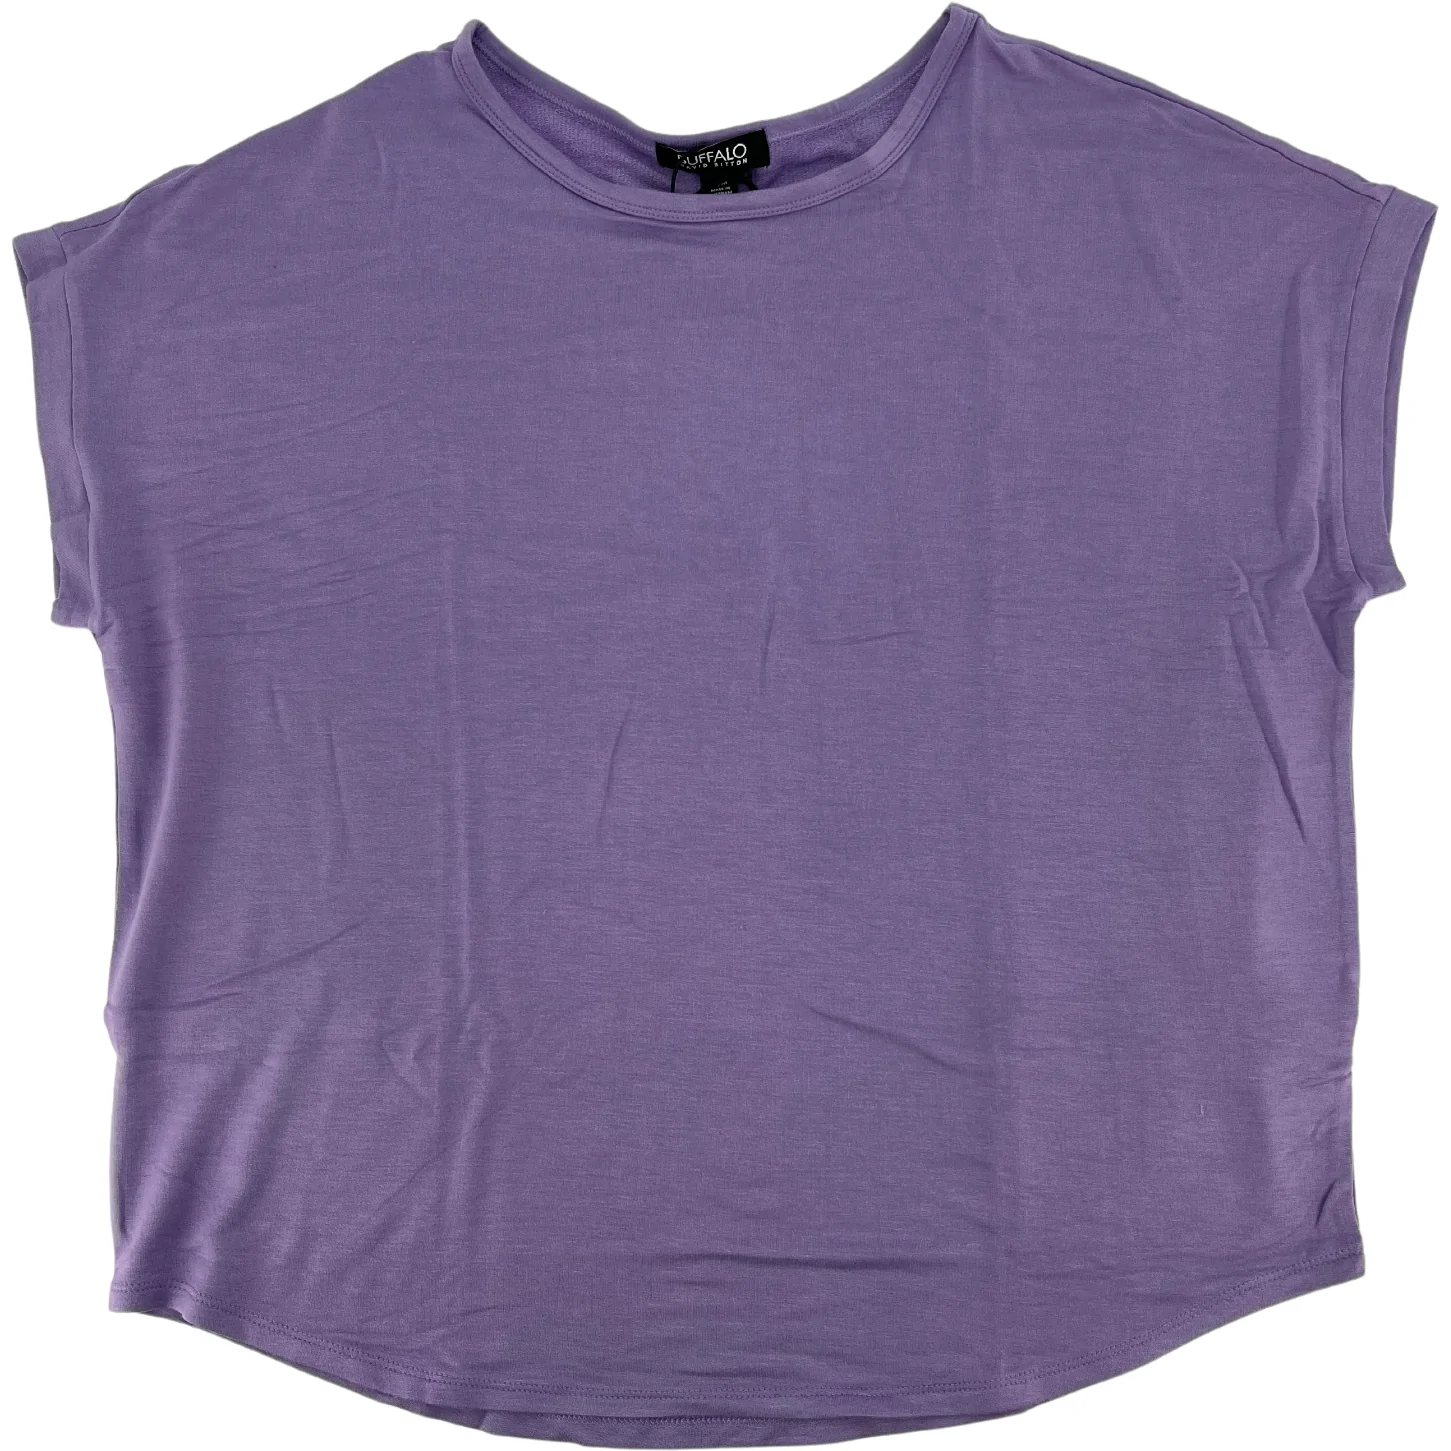 Buffalo David Bitton Women's T-Shirt / Women's Top / Purple / Various Sizes